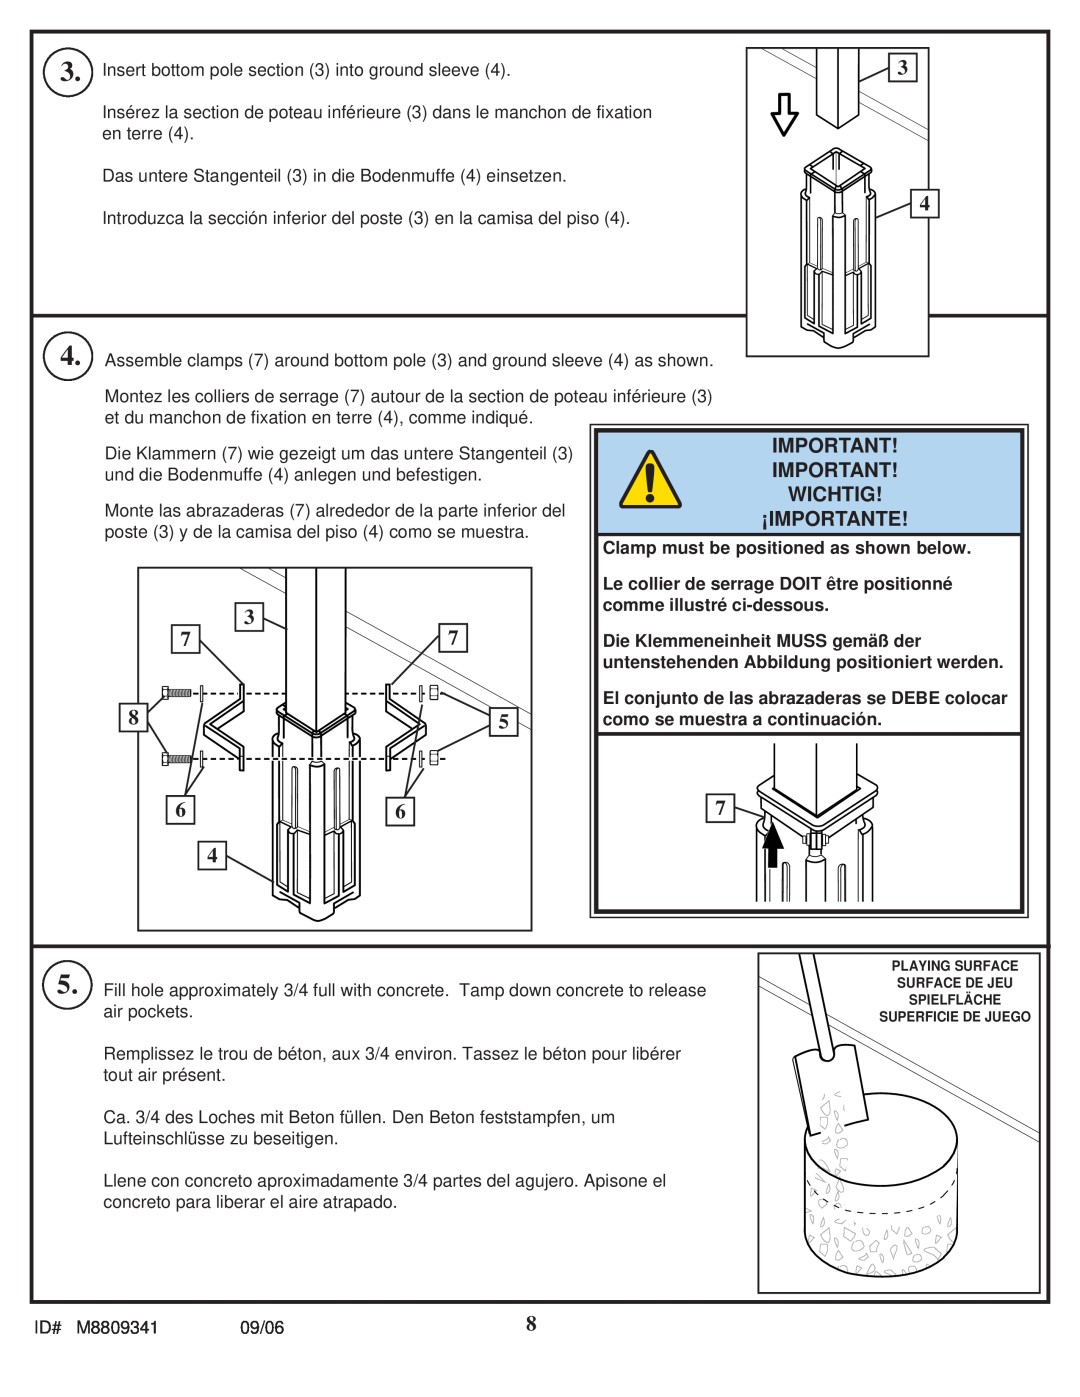 Spalding M8809341 manual Wichtig, ¡Importante, Clamp must be positioned as shown below, comme illustré ci-dessous 